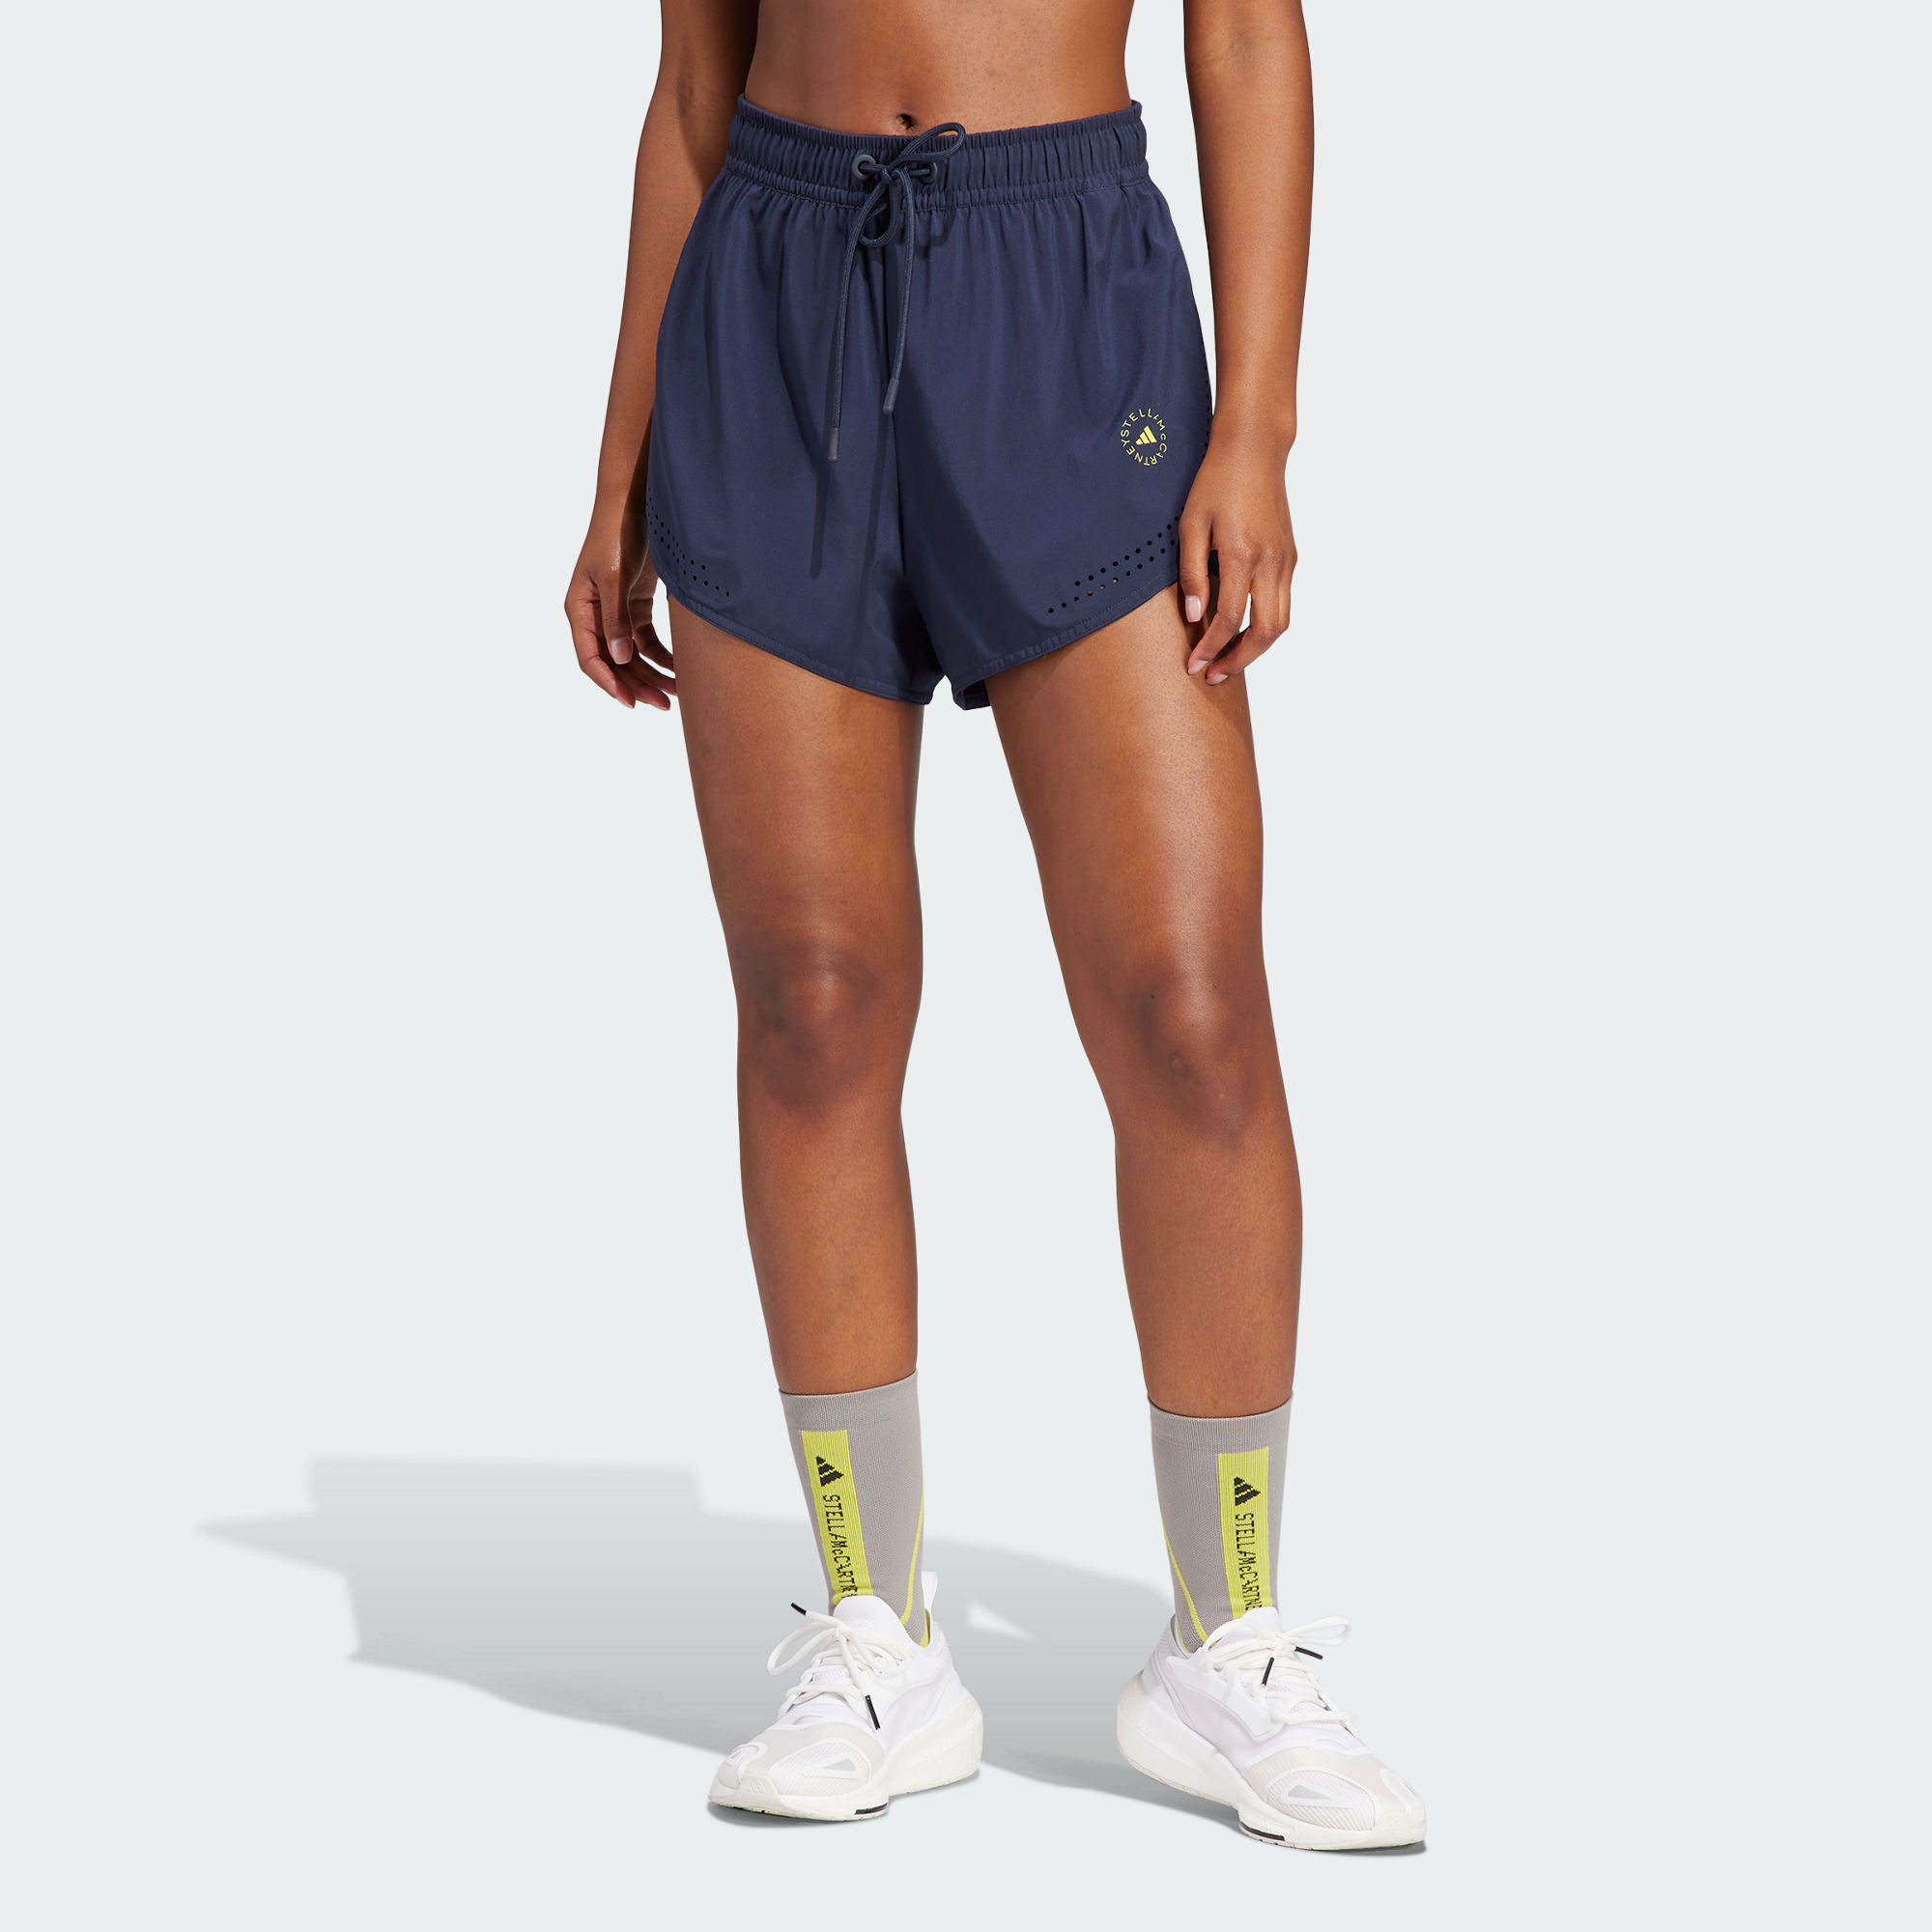 adidas adidas by stella mccartney truepurpose 2-in-1 training shorts women legink size a/xs